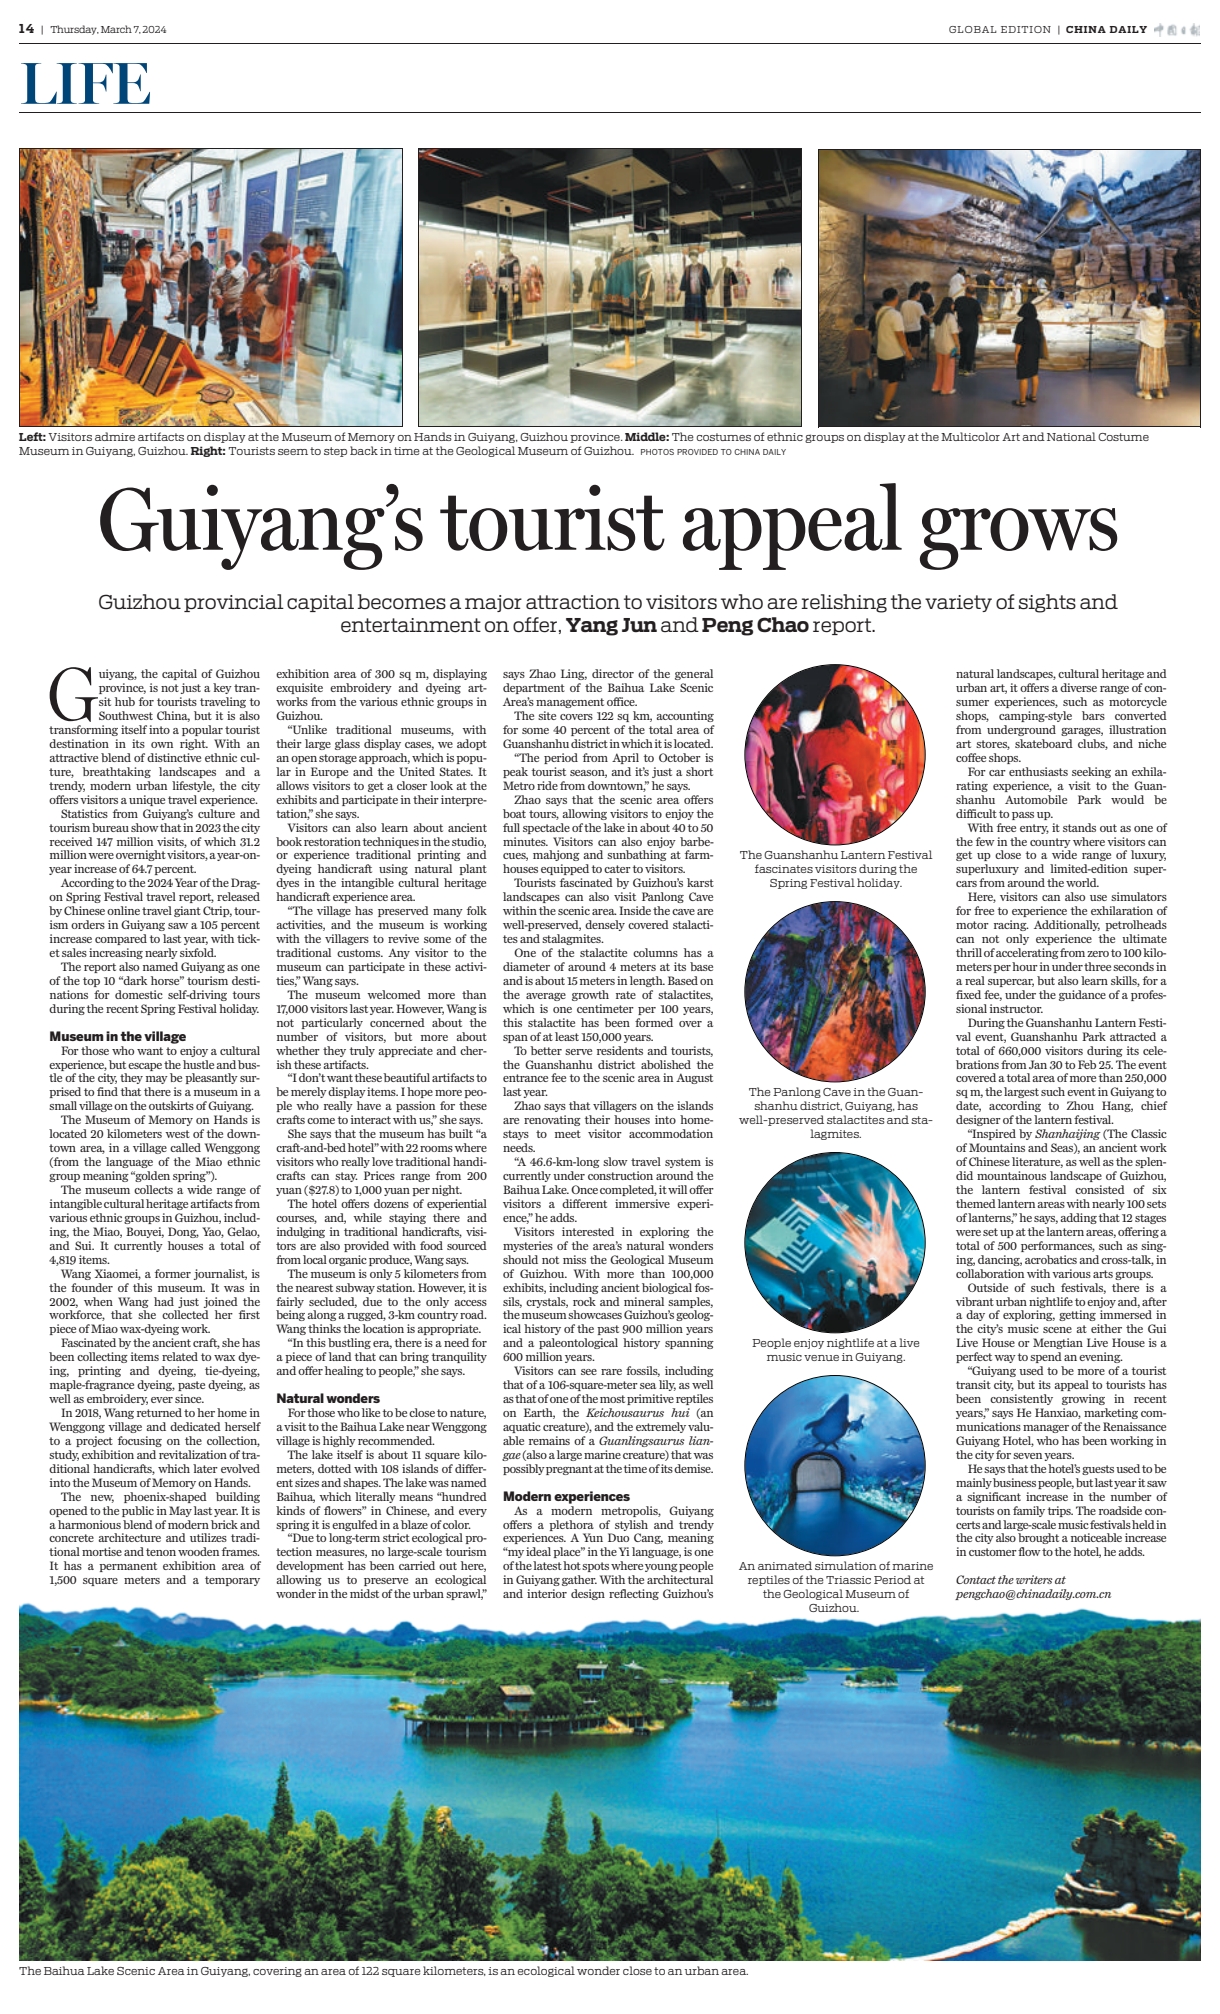 《中国日报》国际版整版聚焦贵阳蝶变从旅游中转城市成为热门旅游目的地